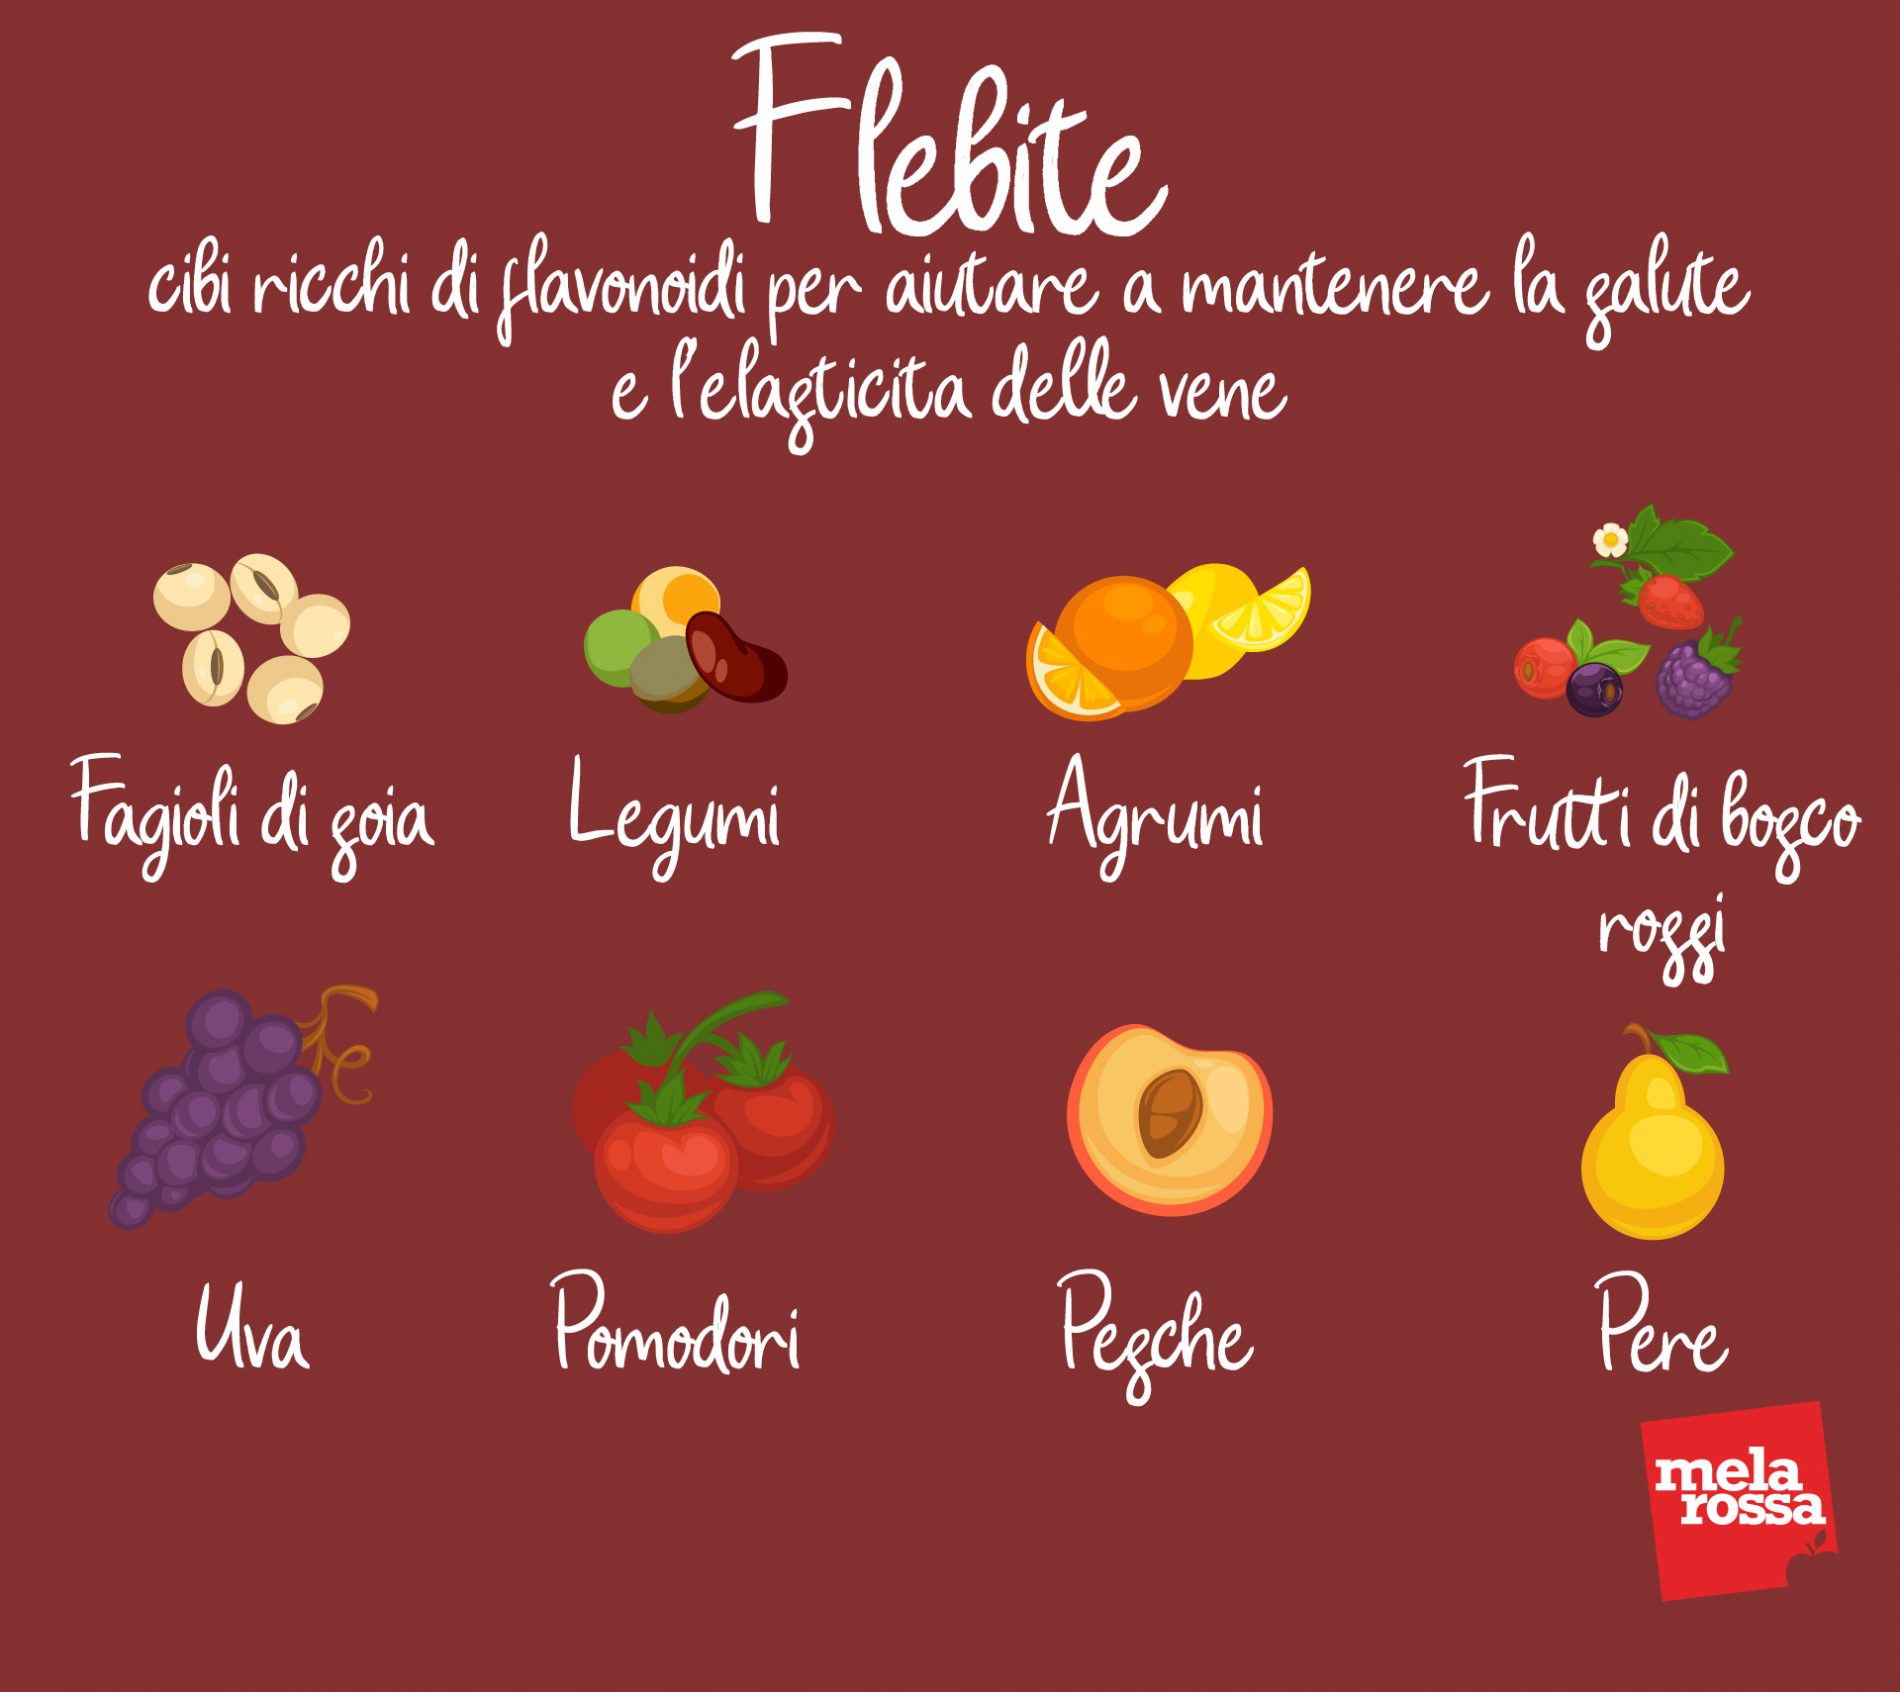 flebite. cibi ricchi di flavonoidi